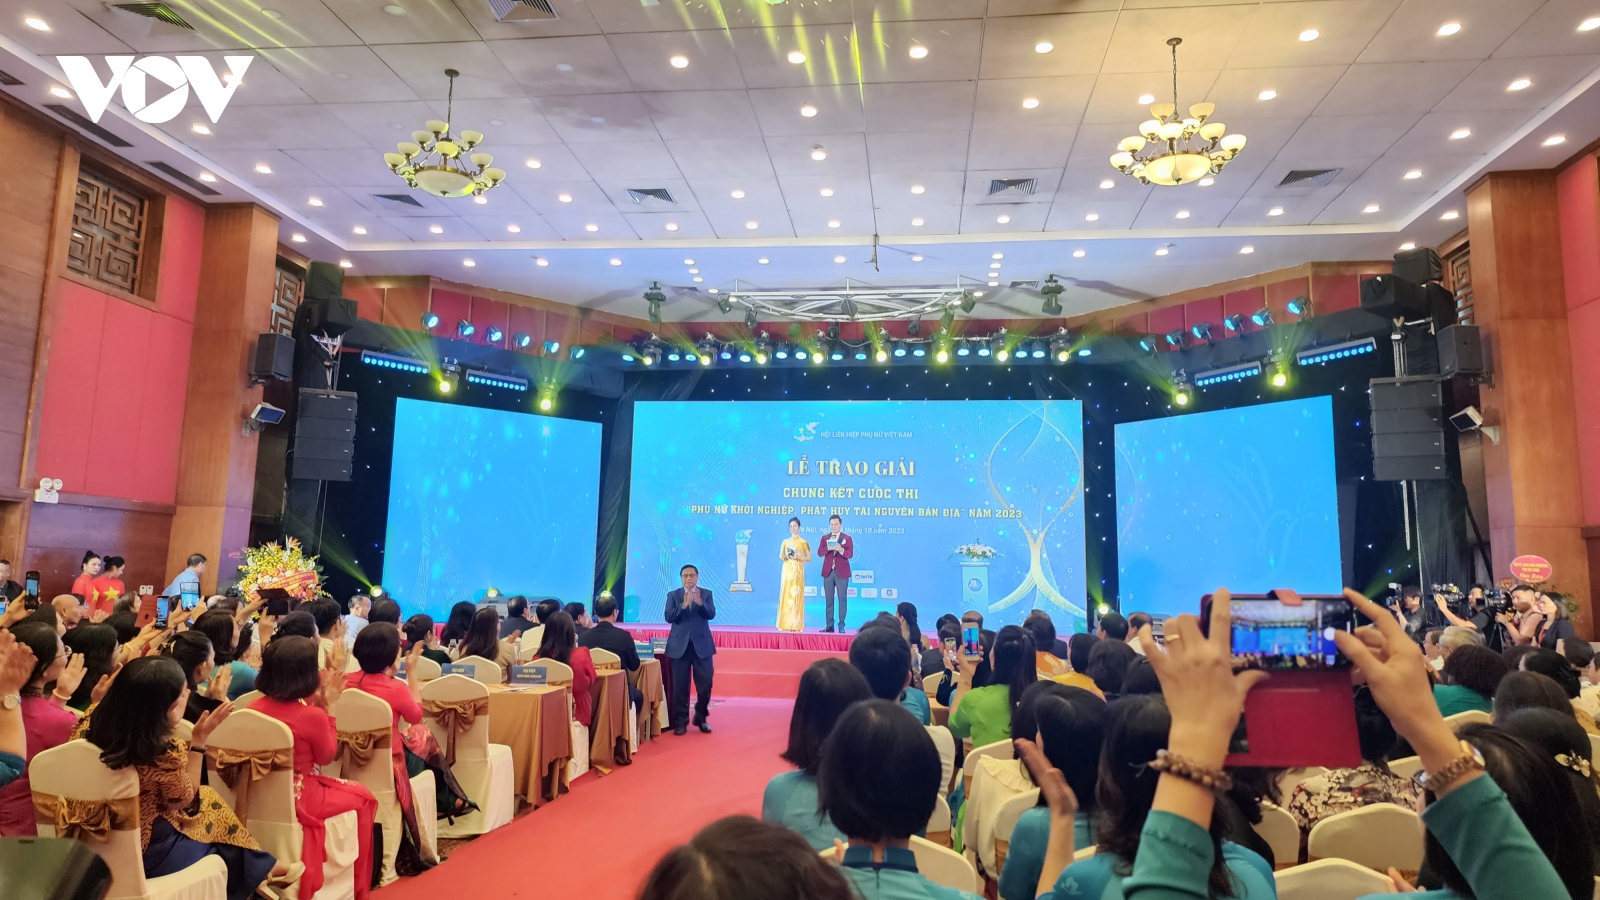 Thủ tướng dự lễ trao giải Chung kết toàn quốc Cuộc thi “Phụ nữ khởi nghiệp"